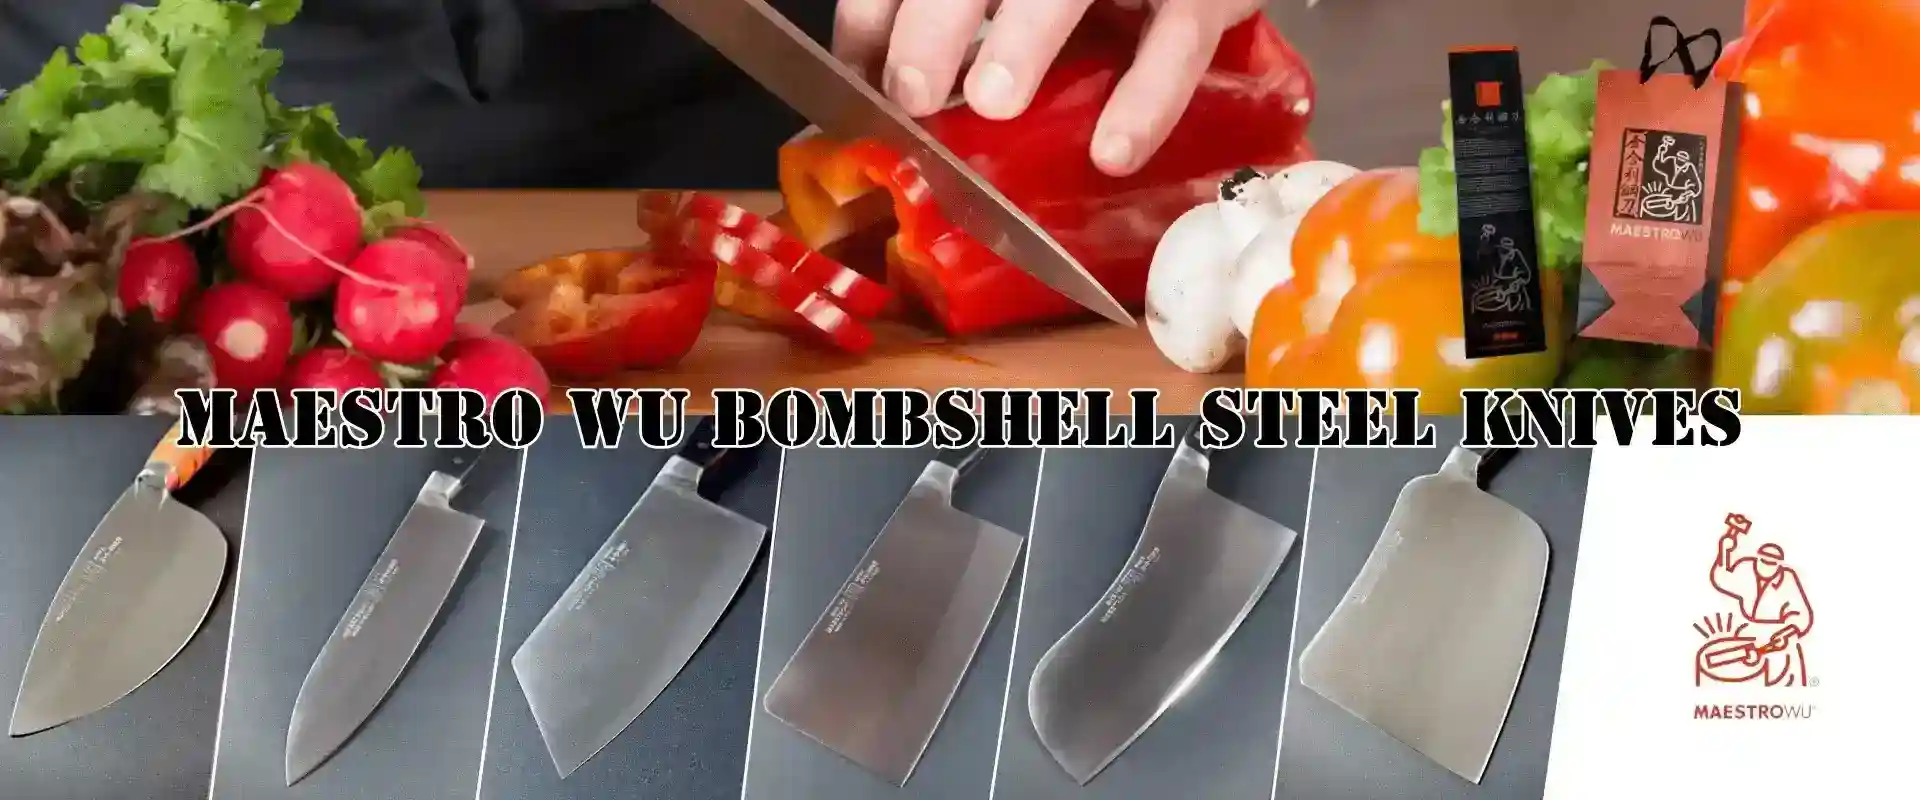 Bombshell steel knives